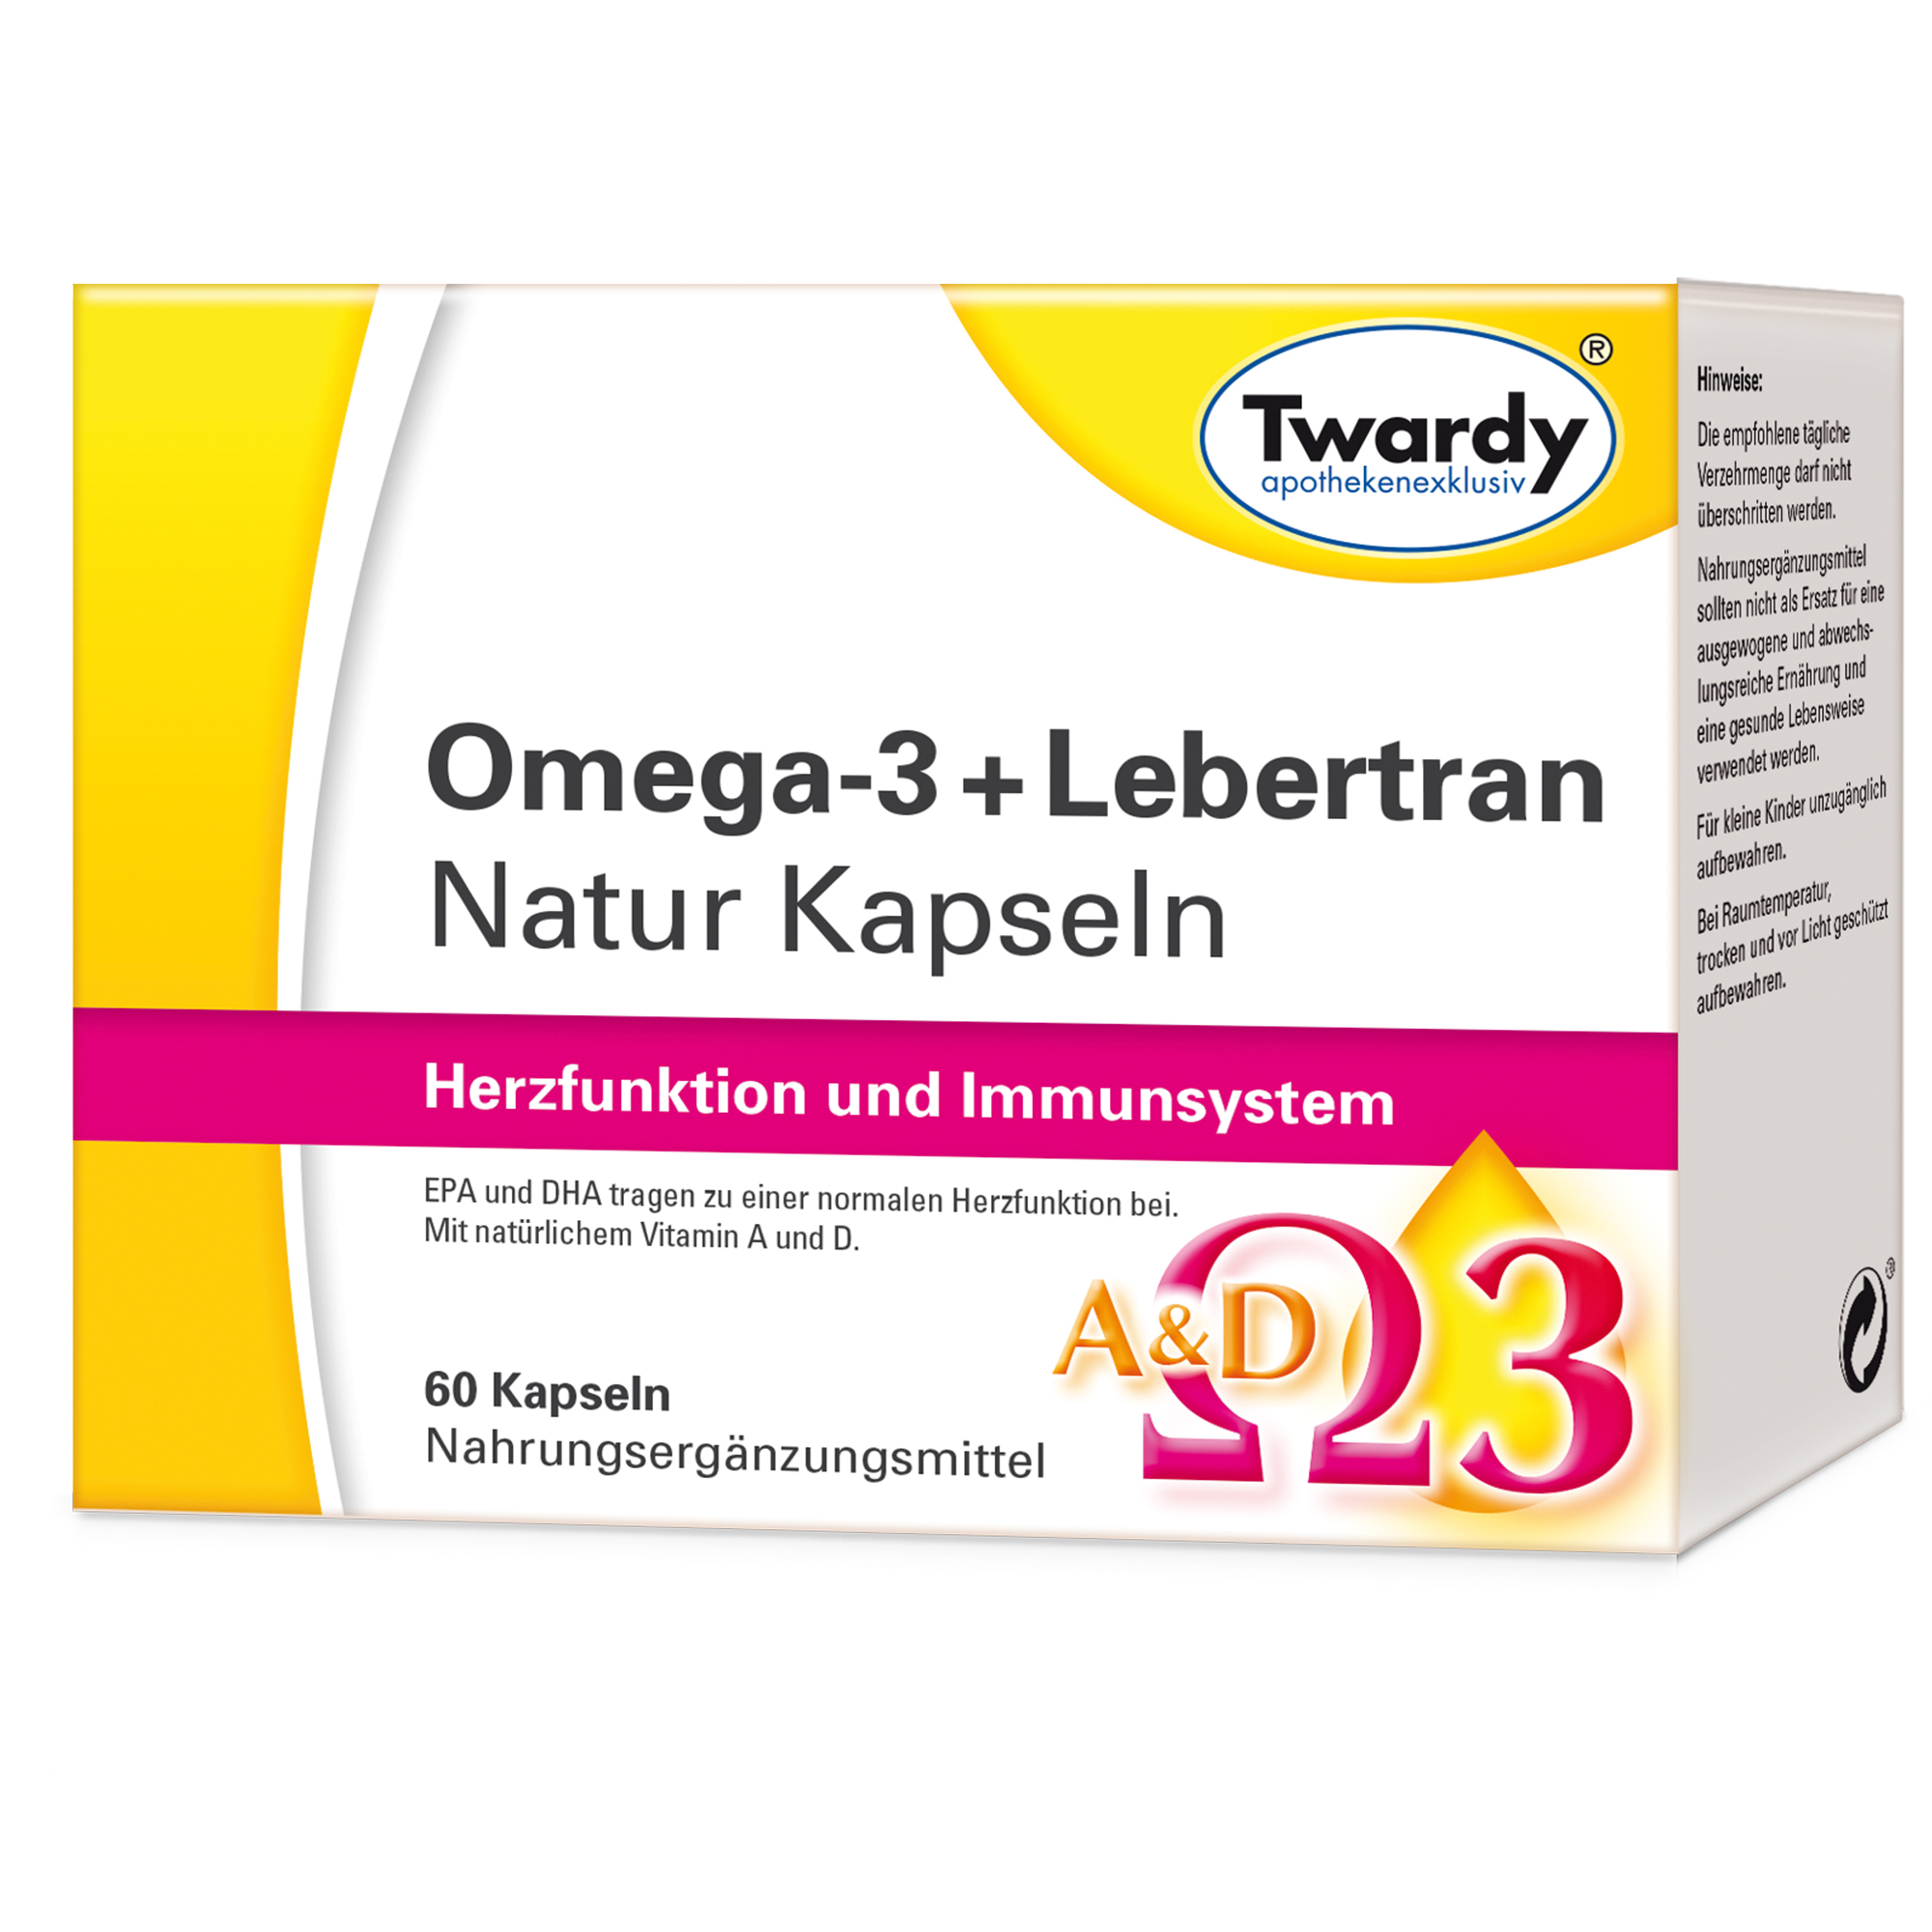 Omega-3 + Lebertran Natur Kapseln